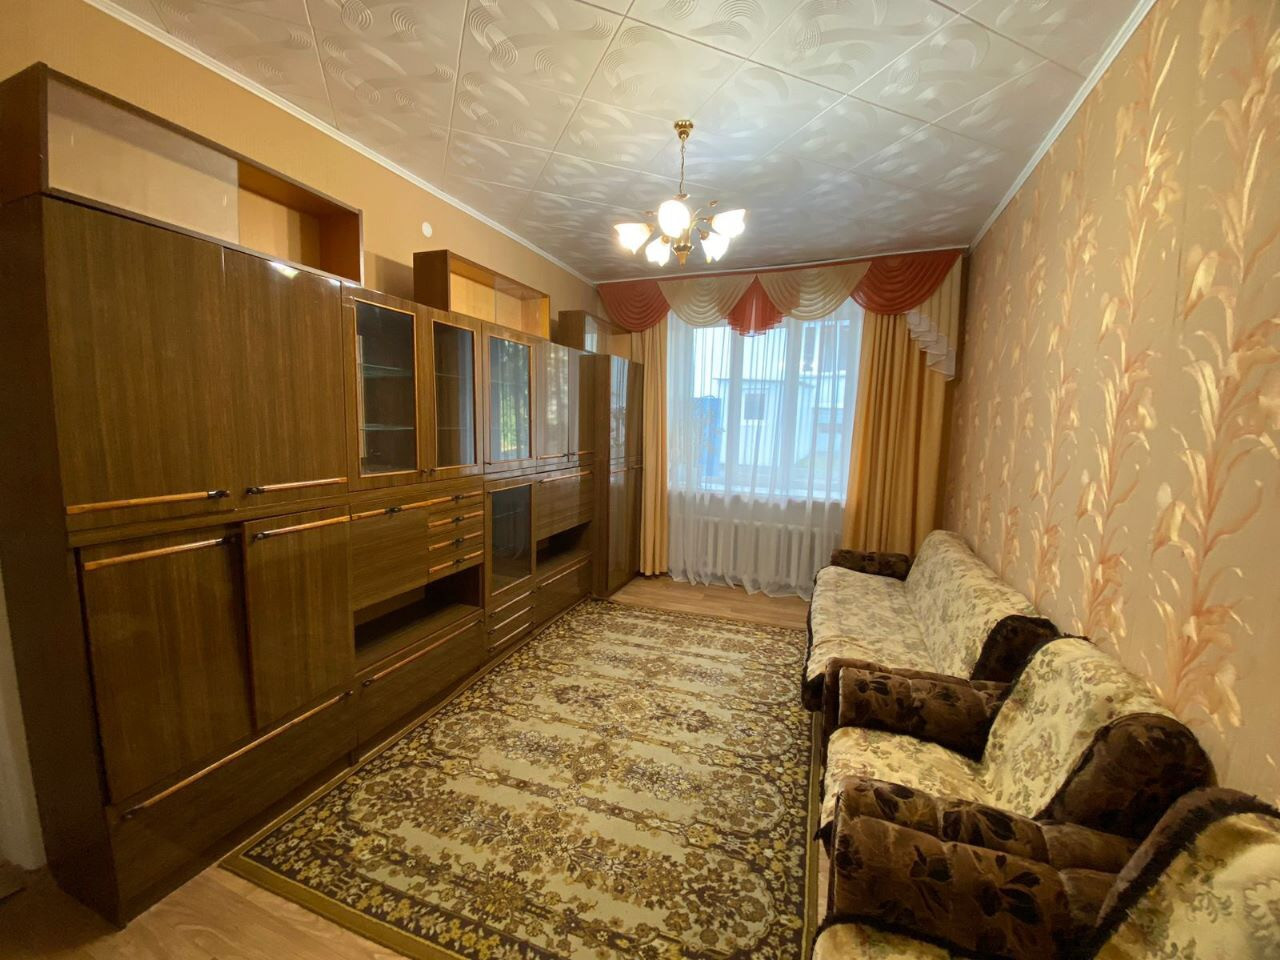 Купить квартиру в железногорске красноярского 2 комнатную. Сорочинск Маяковского 22.